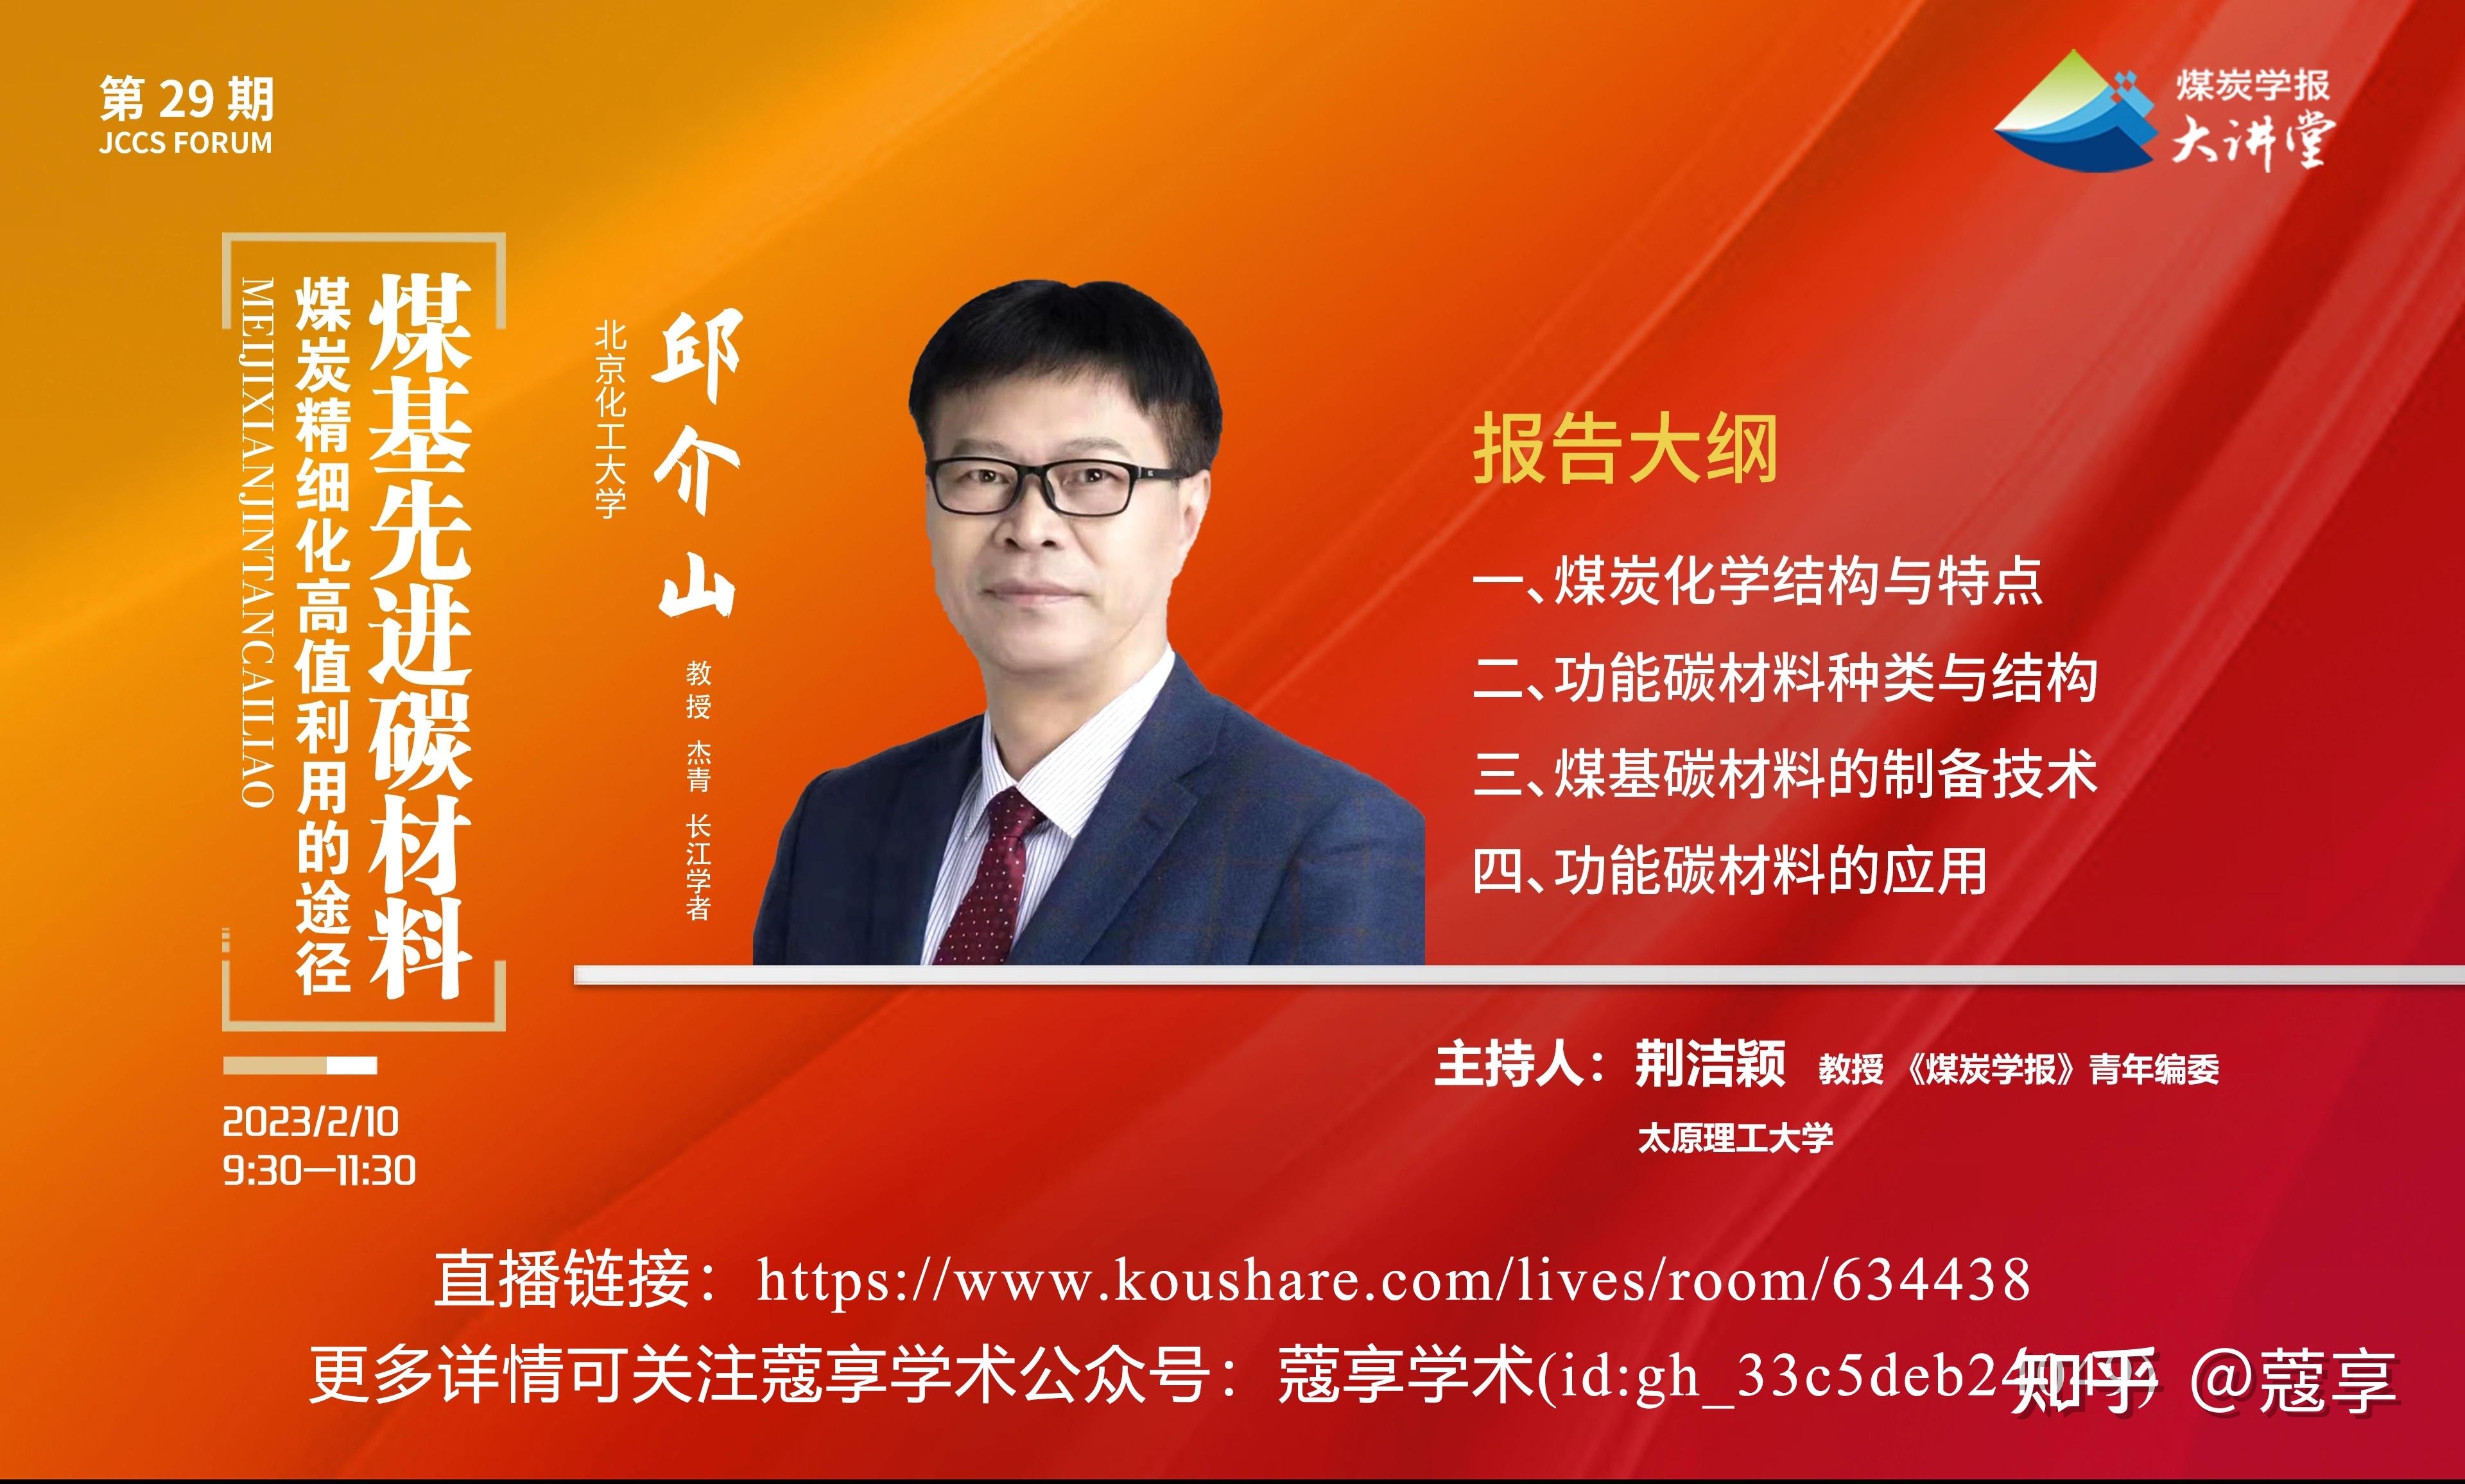 北京化工大学邱介山教授应邀到电工研究所作报告----中国科学院科技创新发展中心